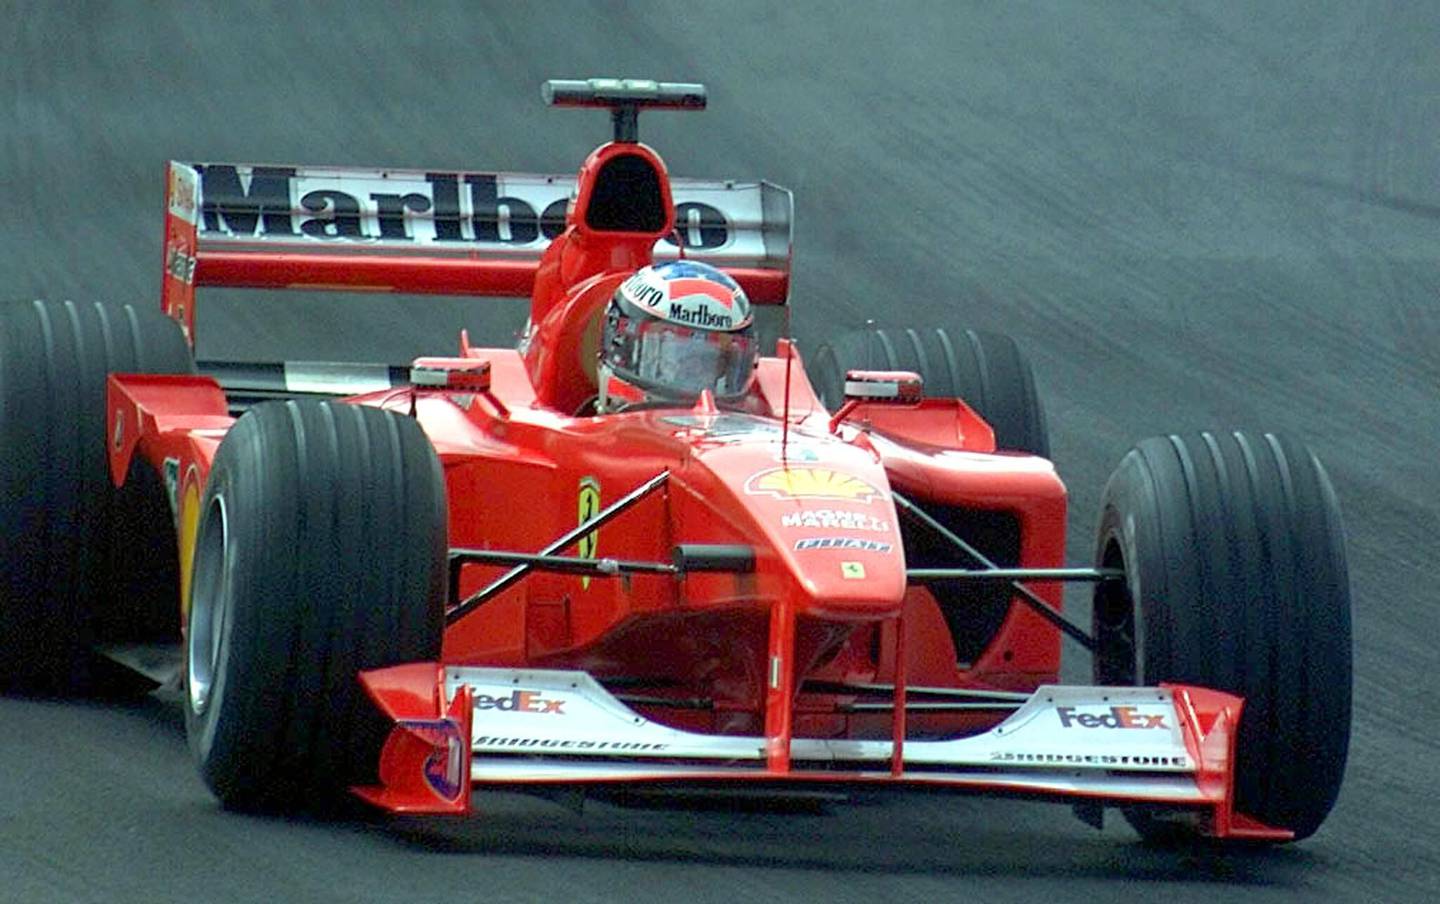 El alemán Michael Schumacher (I), excampeón del mundo de Fórmula Uno, lidera el GP de Brasil de Fórmula Uno en Sao Paulo, Brasil, el 26 de marzo de 2000. Fotógrafo: Daniel Garcia/AFP/Getty Images